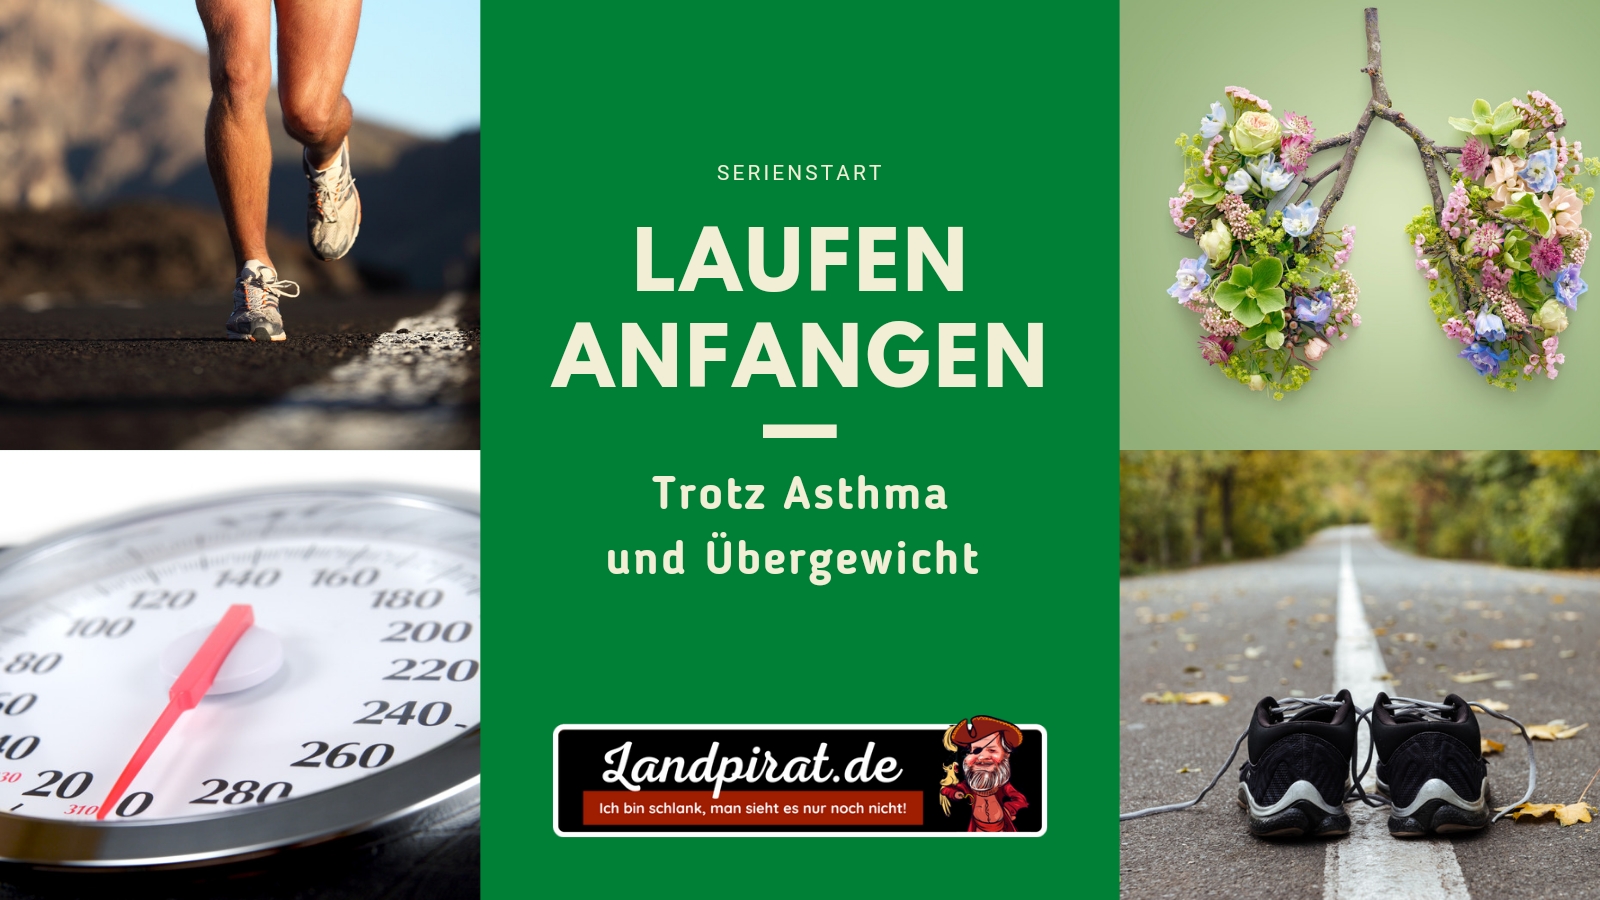 Read more about the article Laufen anfangen – Trotz Asthma und Übergewicht